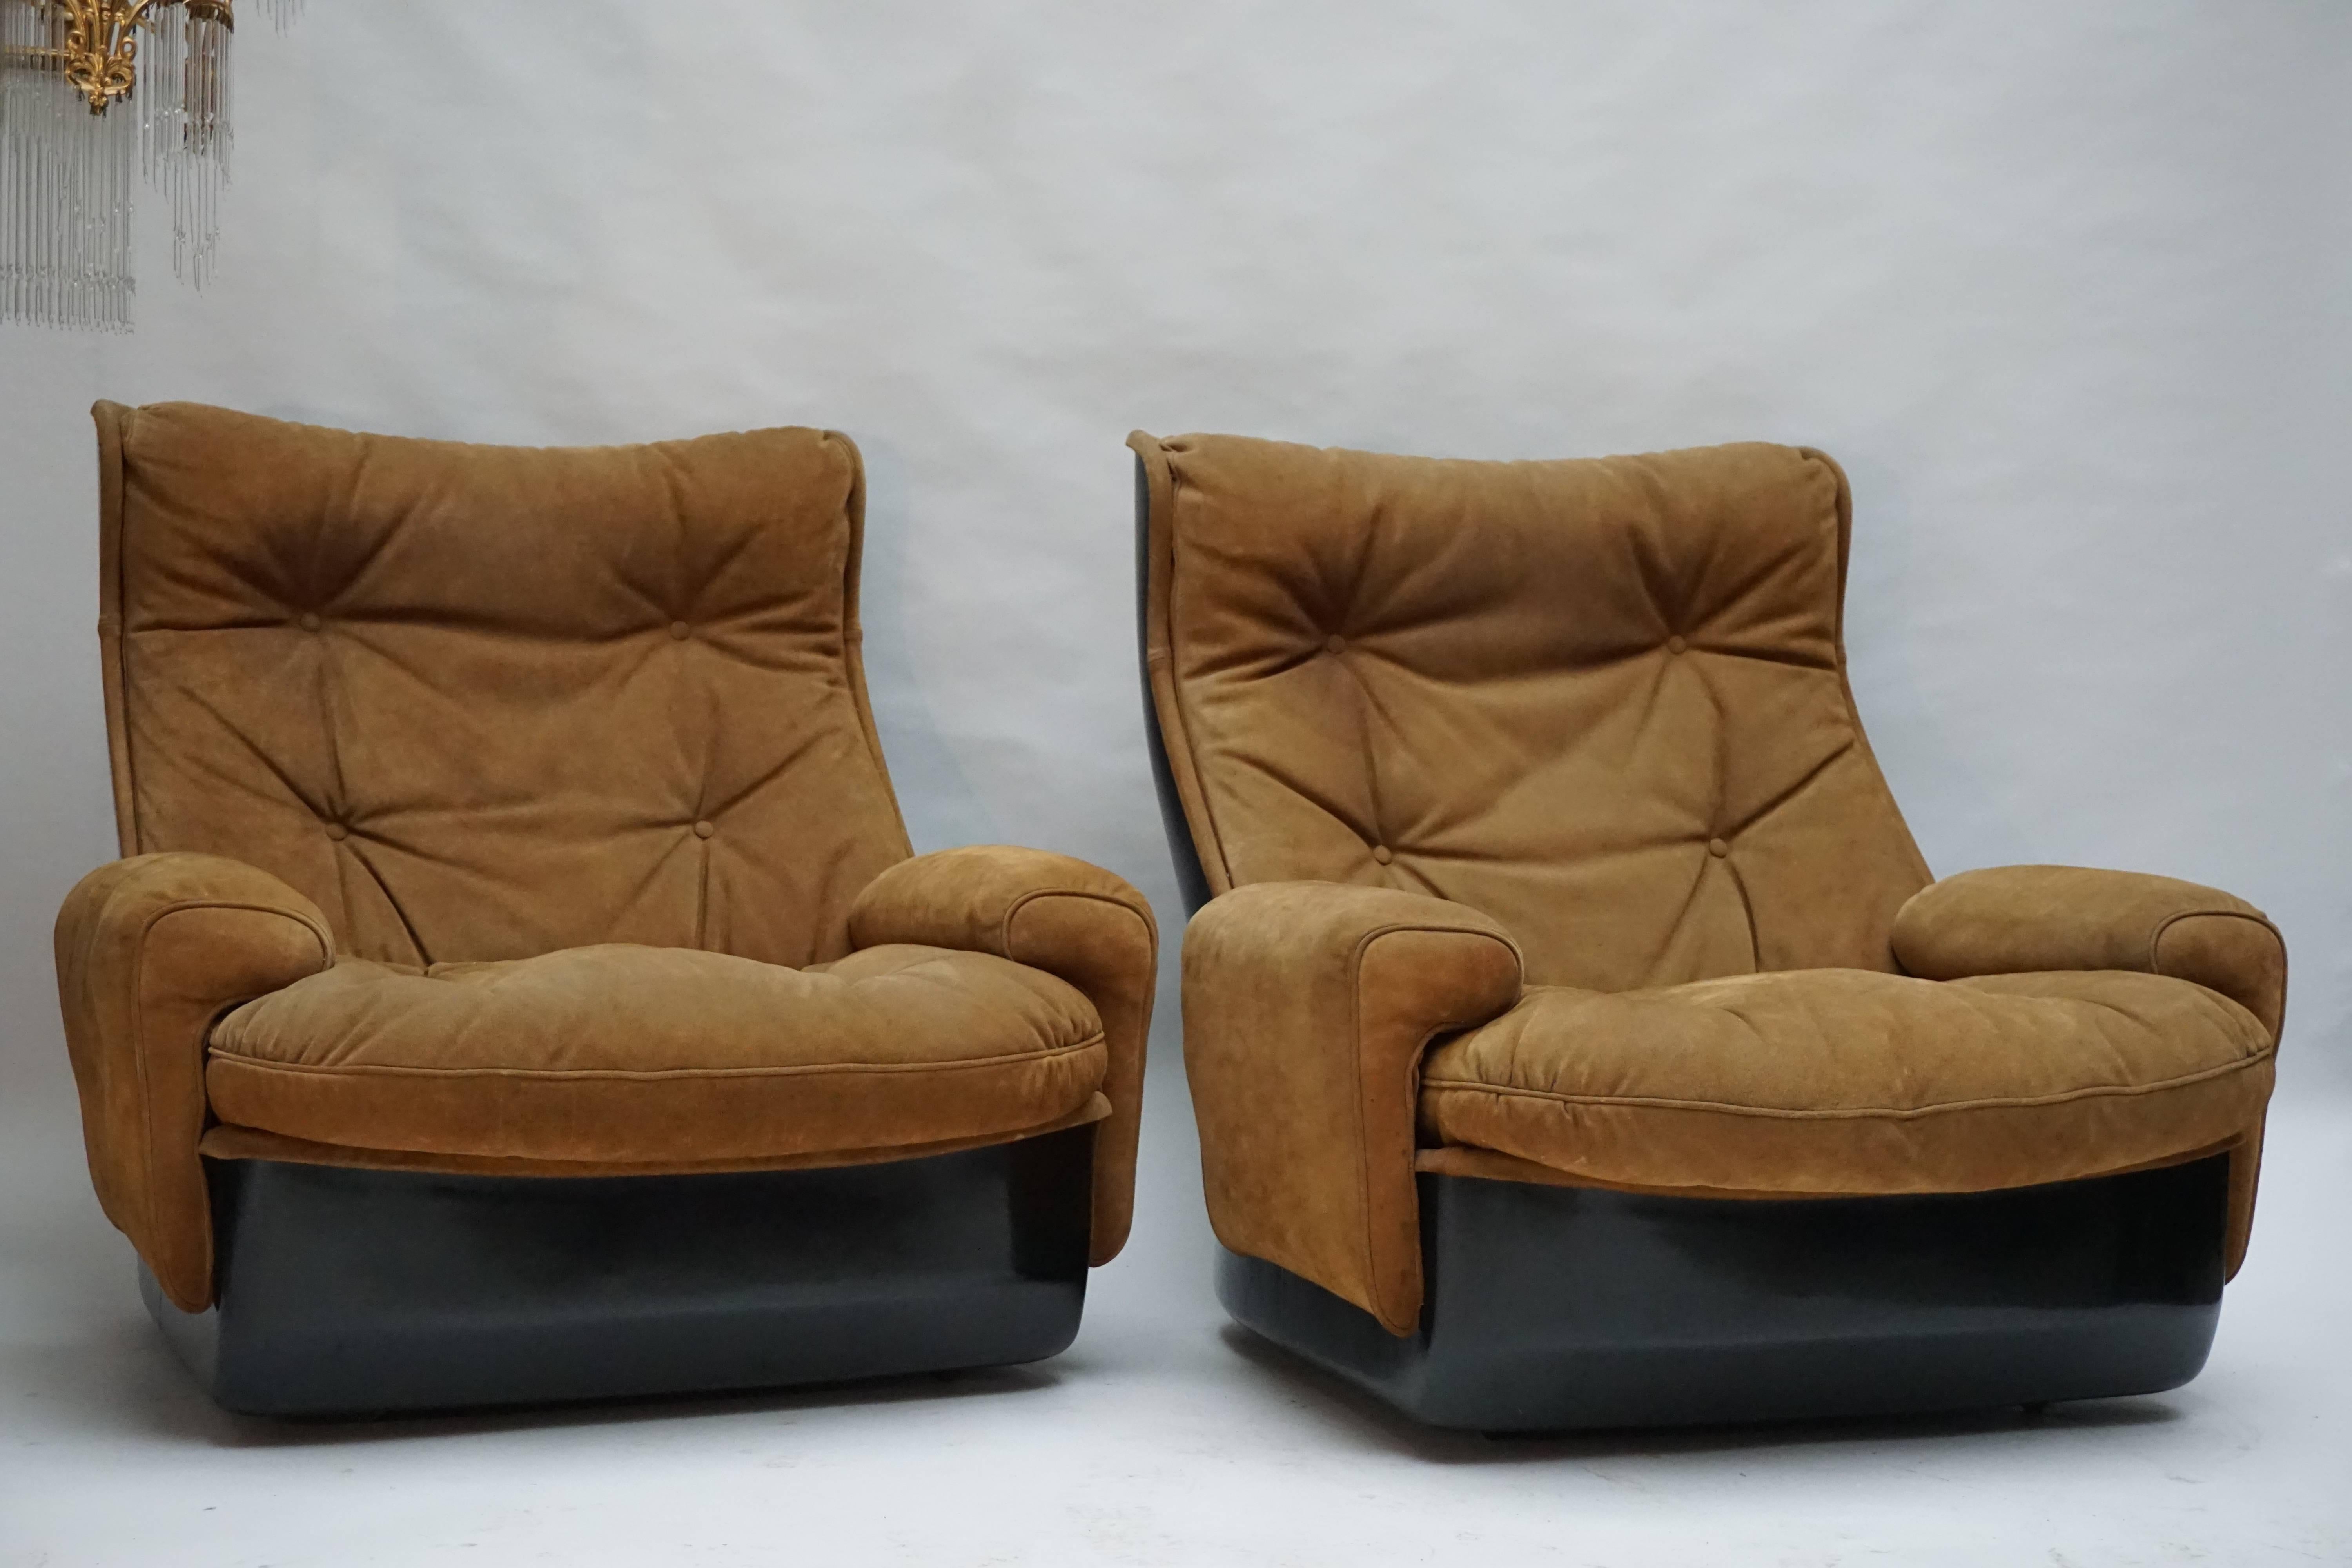 Deux fauteuils de salon sur roulettes constitués par le fabricant français Airborne International.
Les coques sont fabriquées en fibre de verre noire et les sièges sont recouverts d'un revêtement en cuir boutonné.
